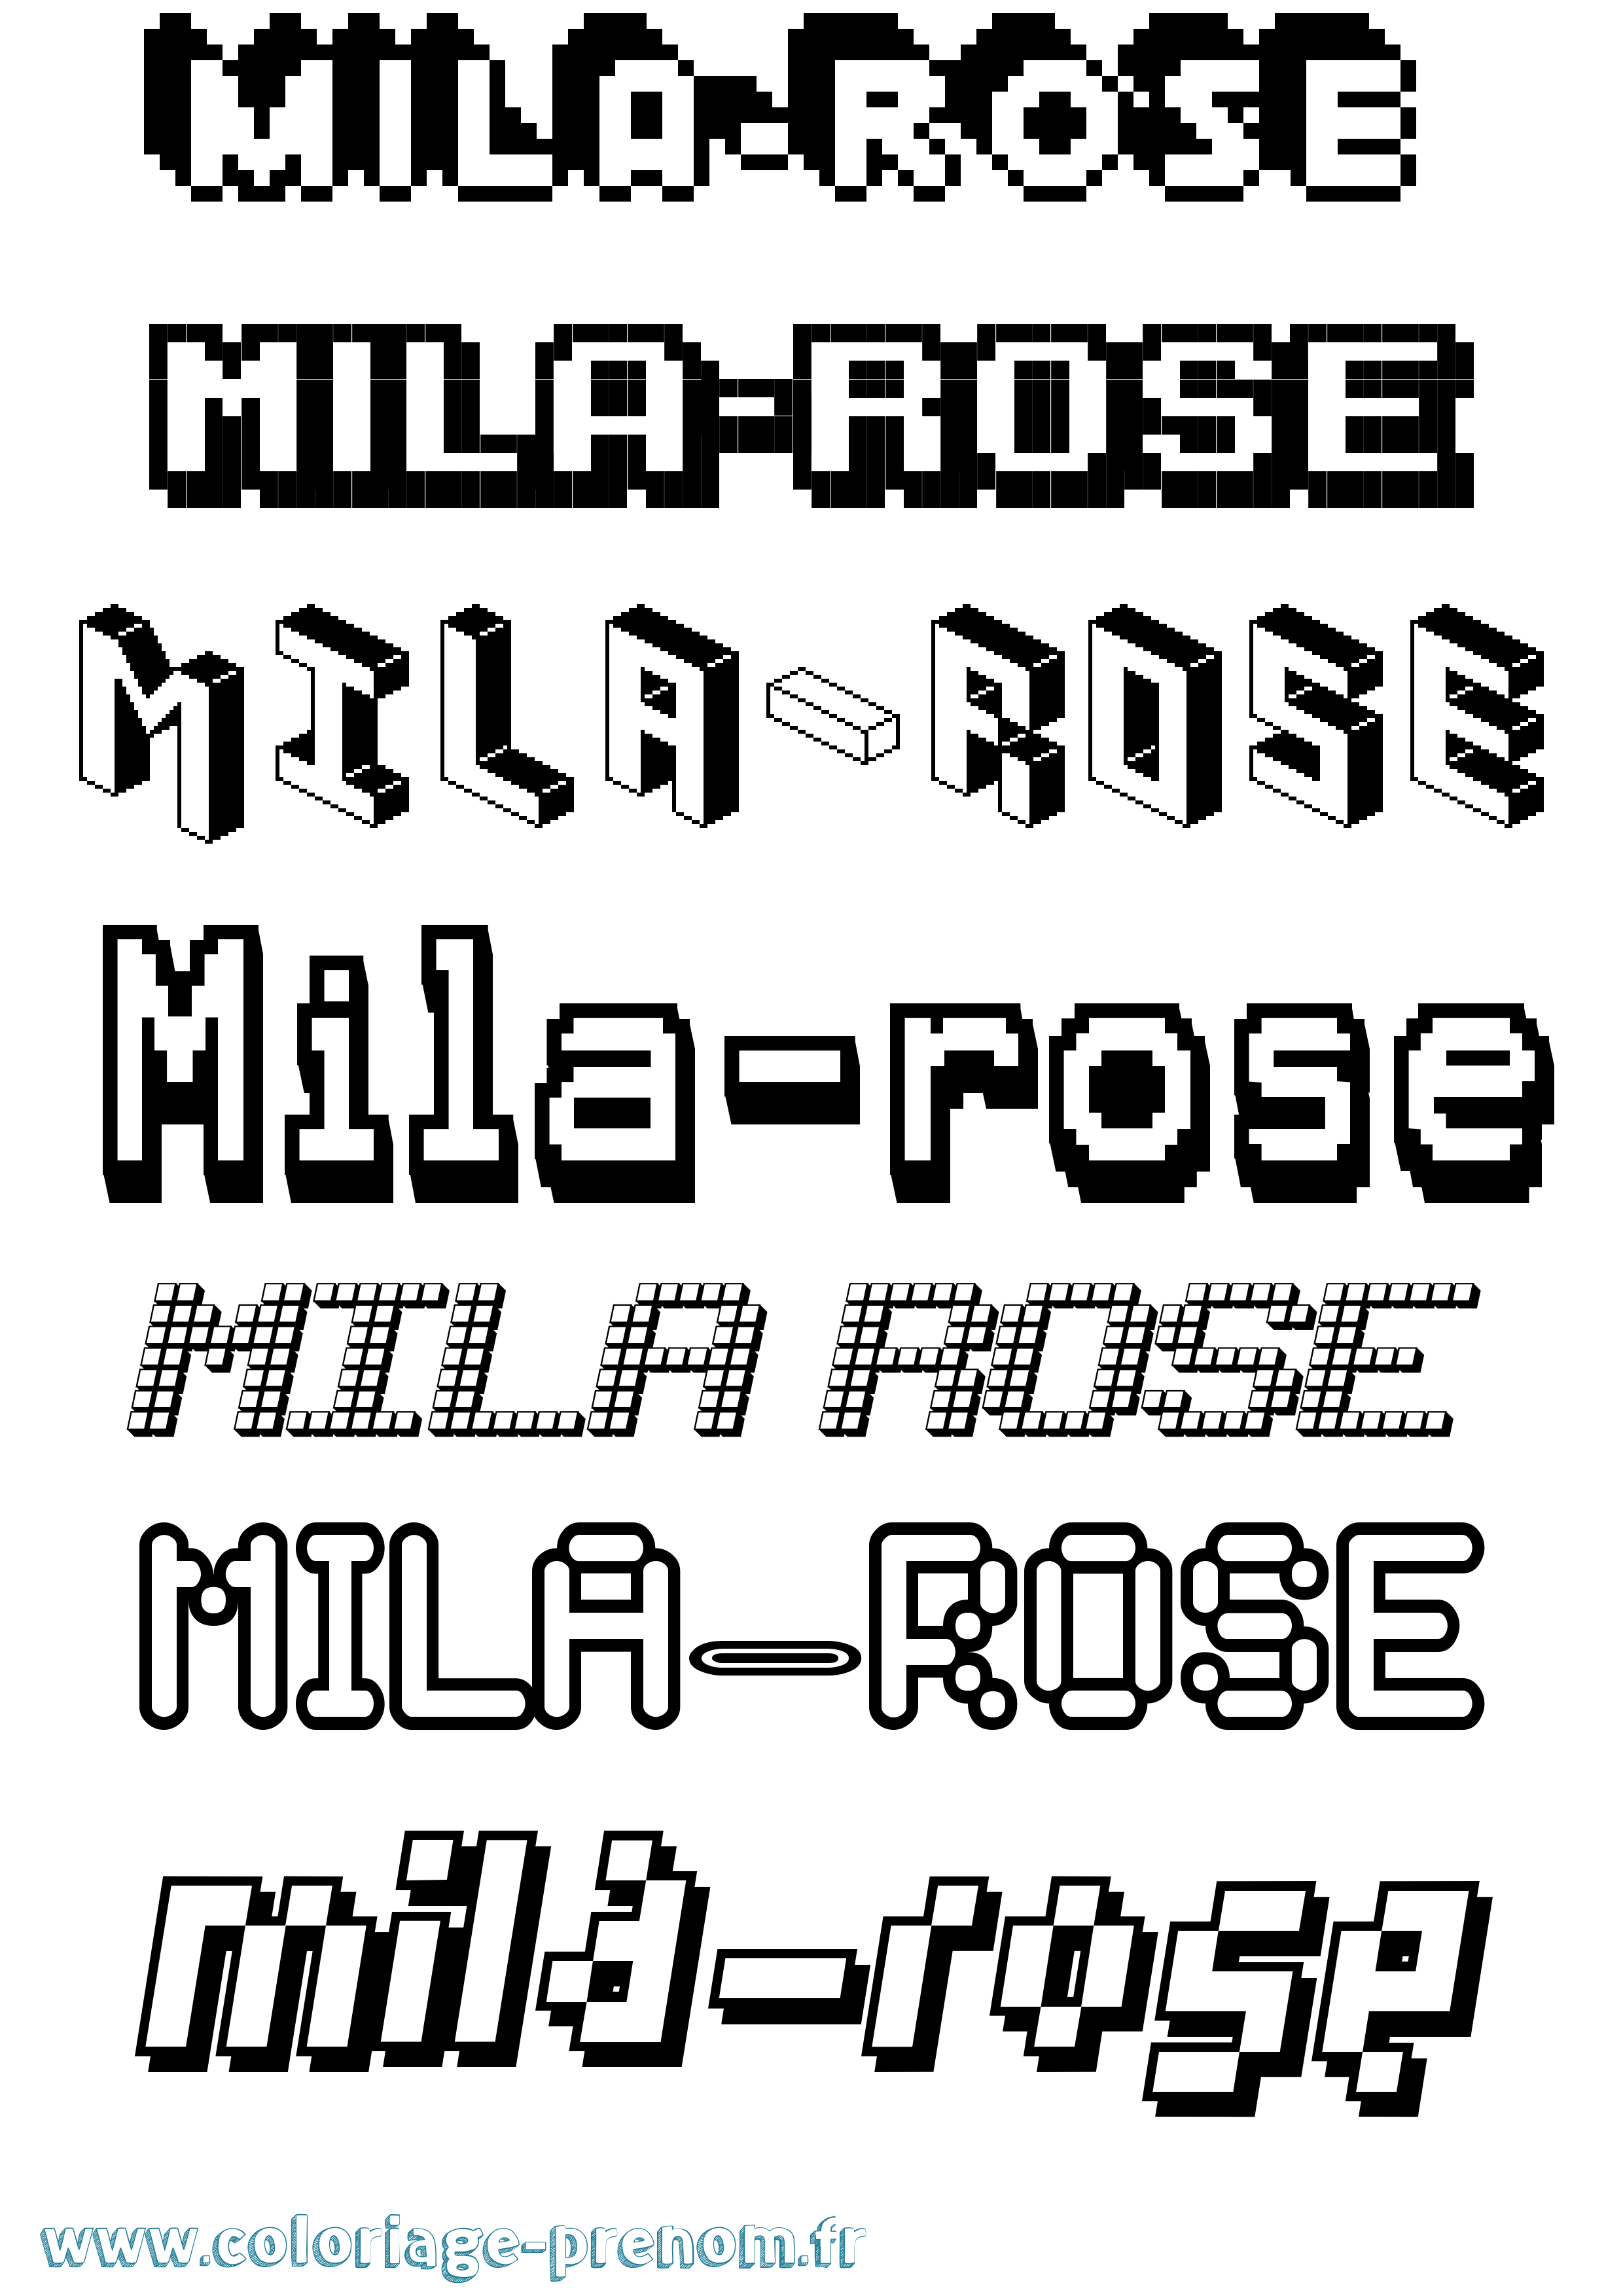 Coloriage prénom Mila-Rose Pixel